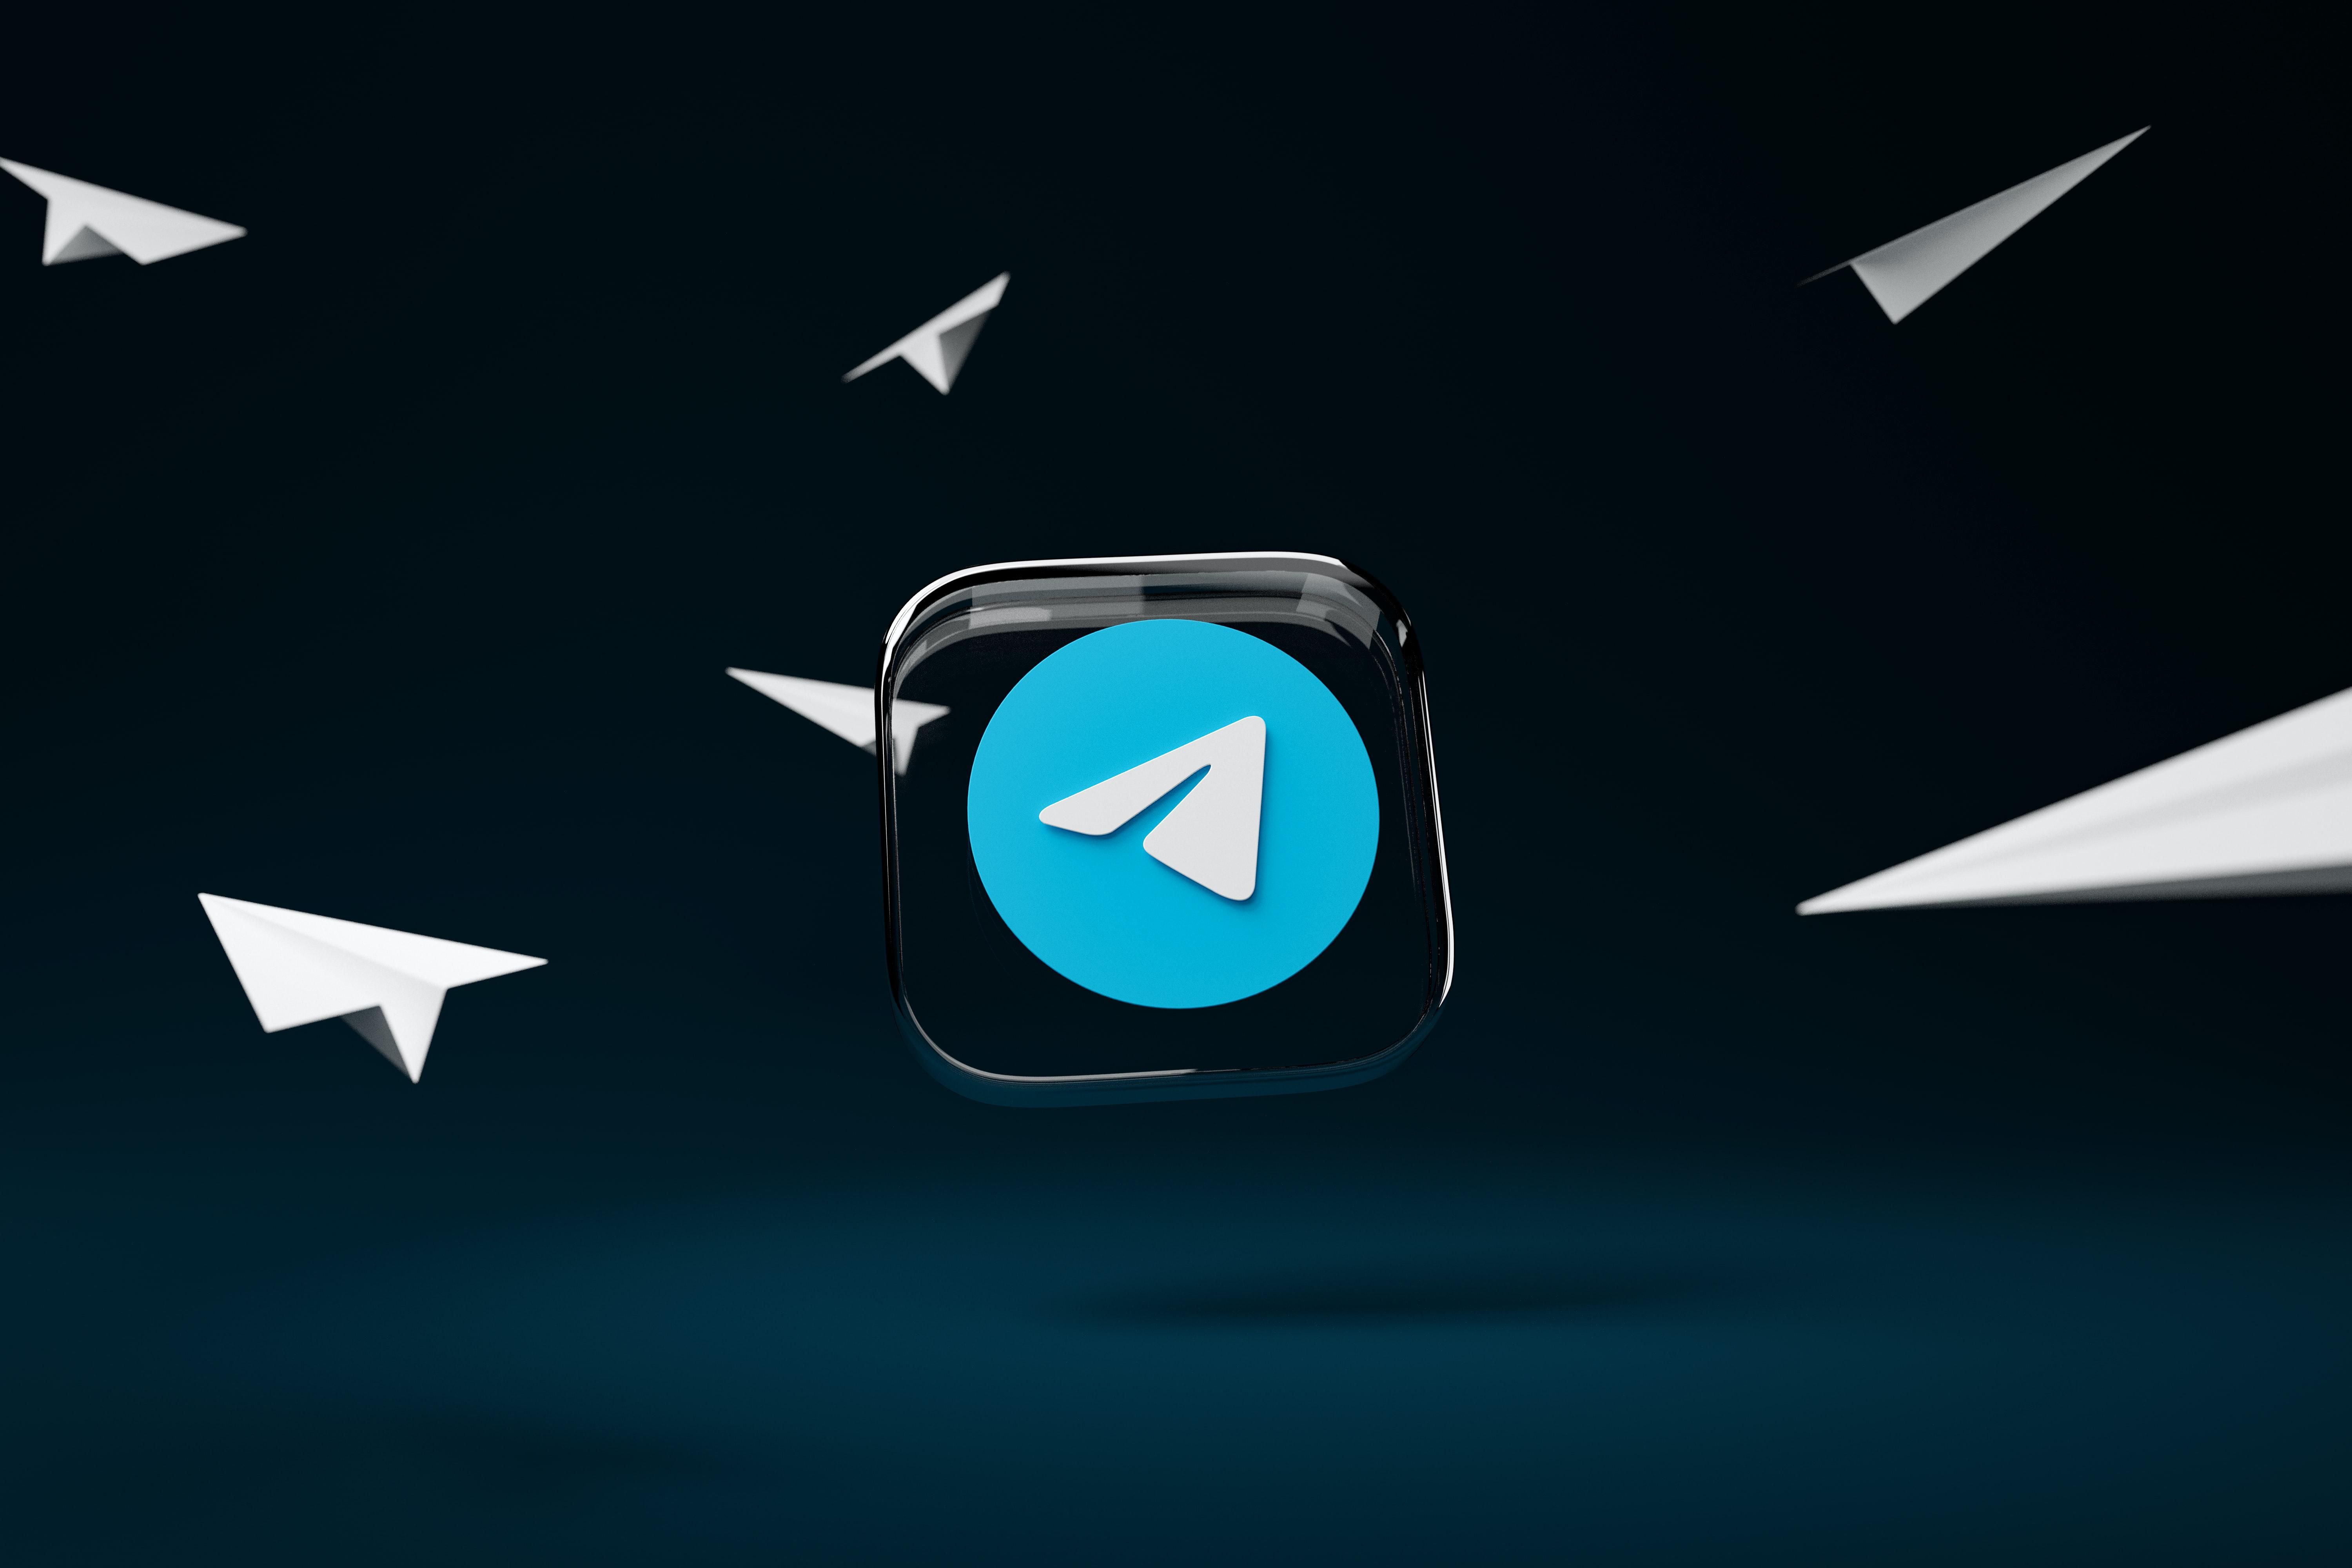 A Telegram kék-fehér logója egy üvegben, amely körül papírrepülők repkednek